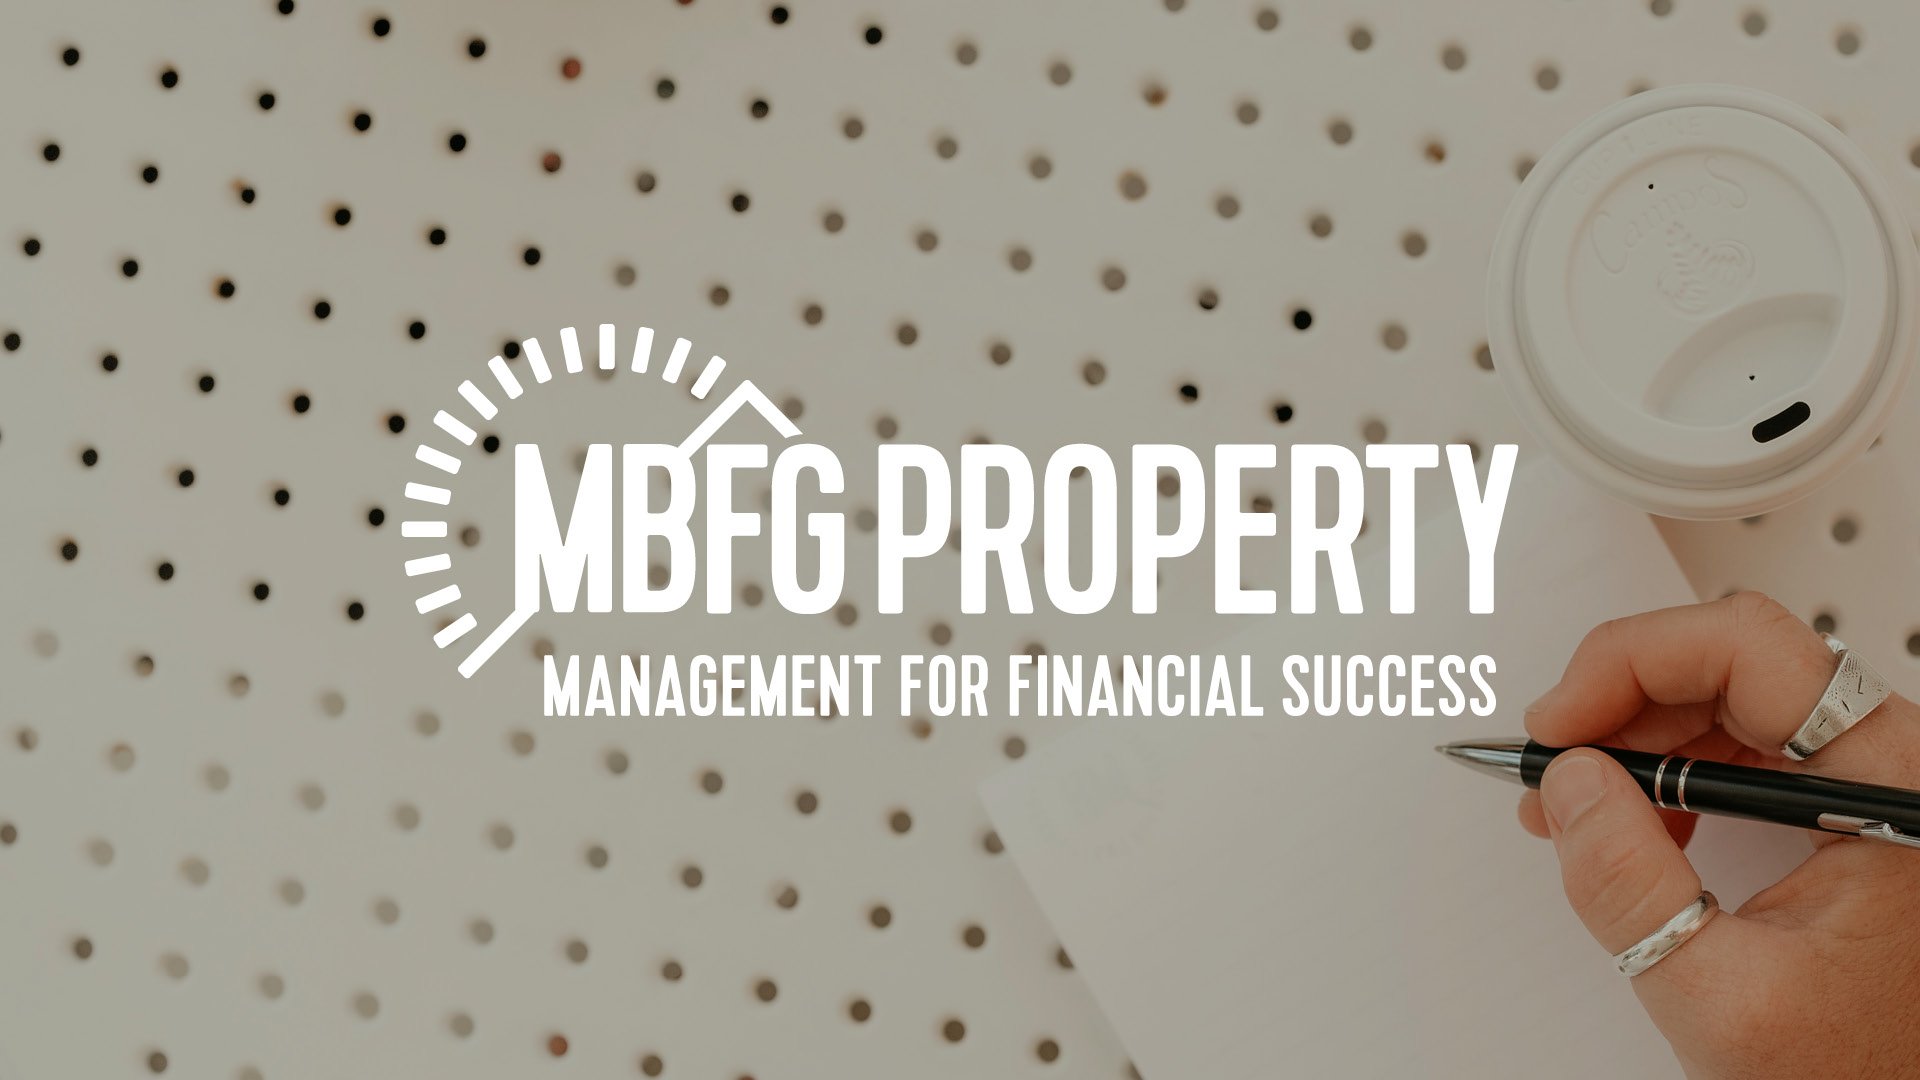 MBFG Property Case Study12.jpg